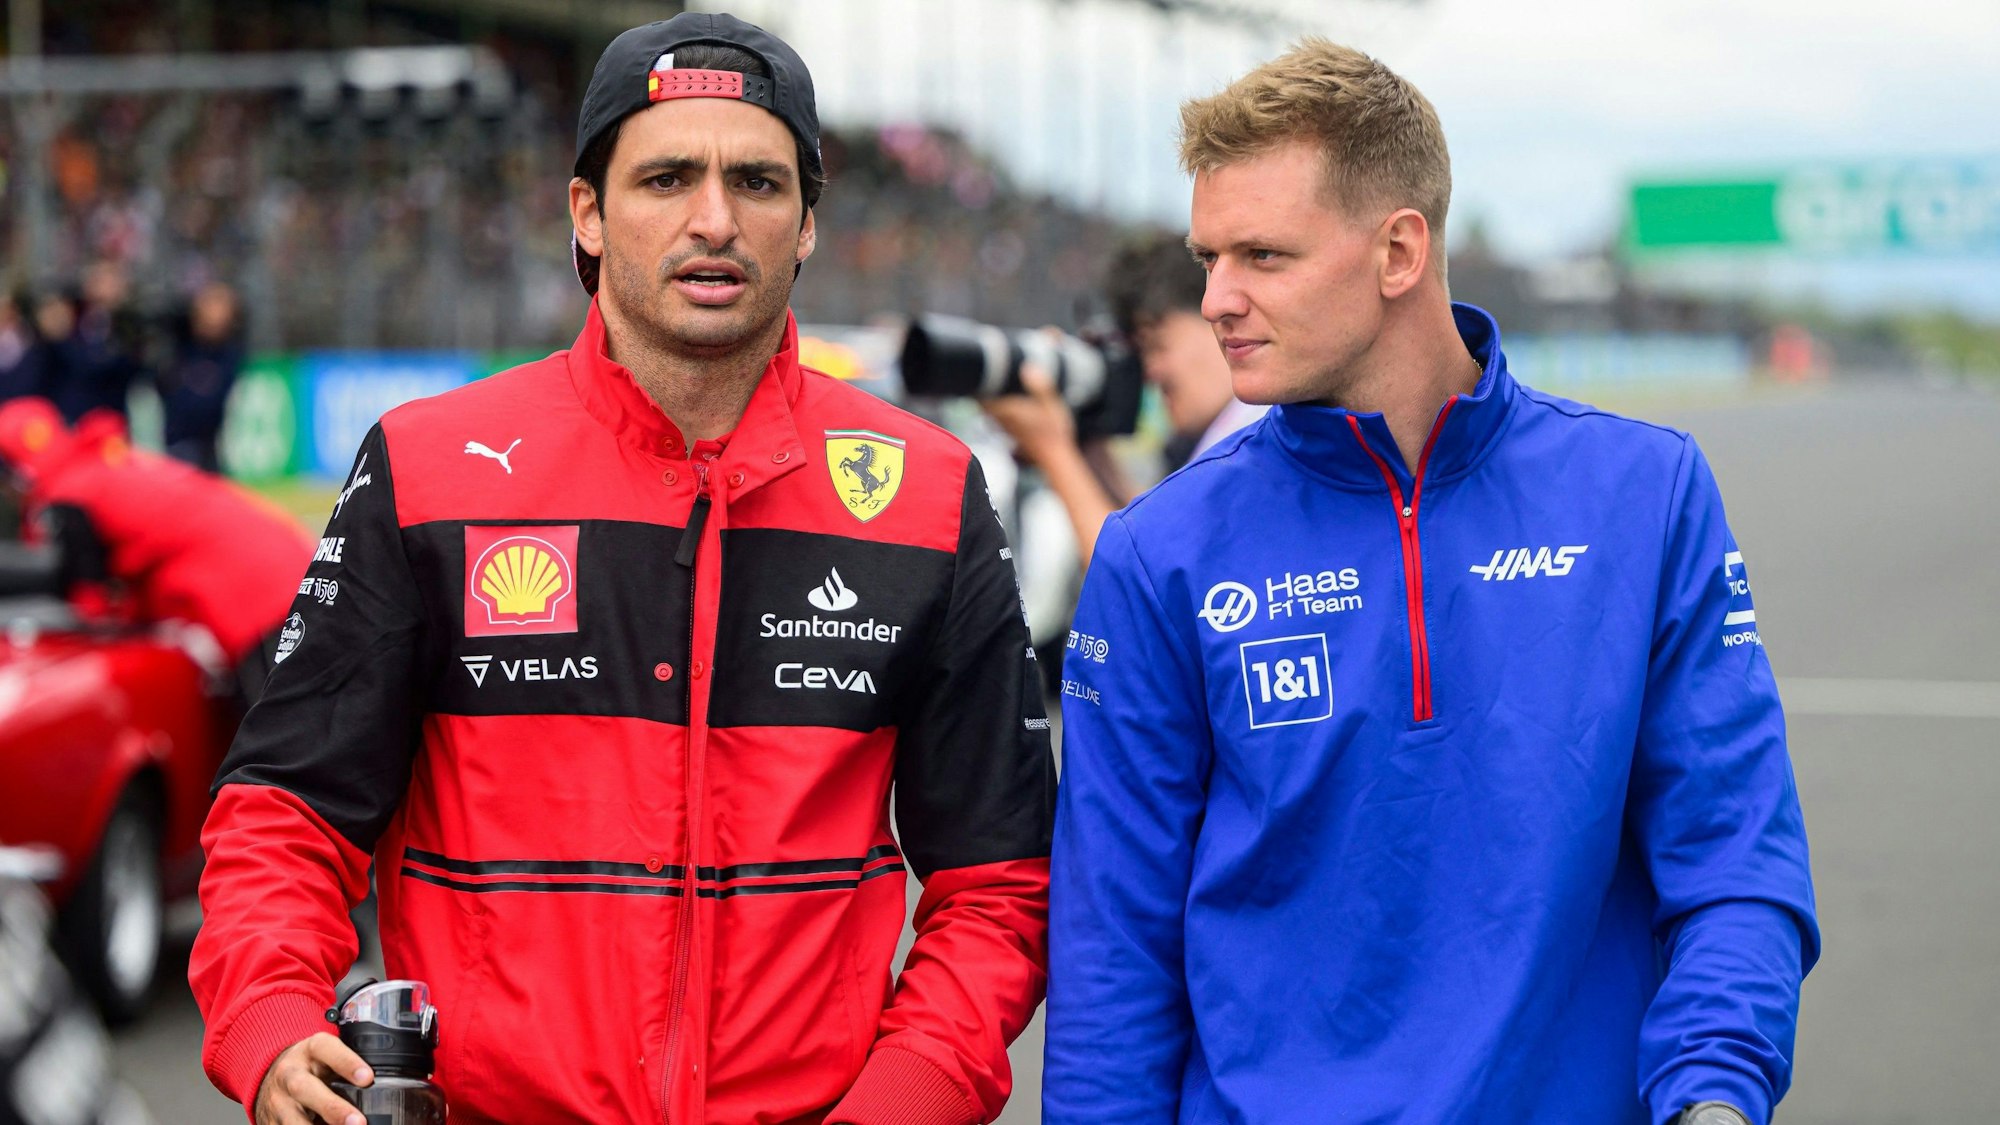 Mick Schumacher geht beim Renn-Wochenende der Formel 1 mit Ferrari-Pilot Carlos Sainz durch die Boxengasse.